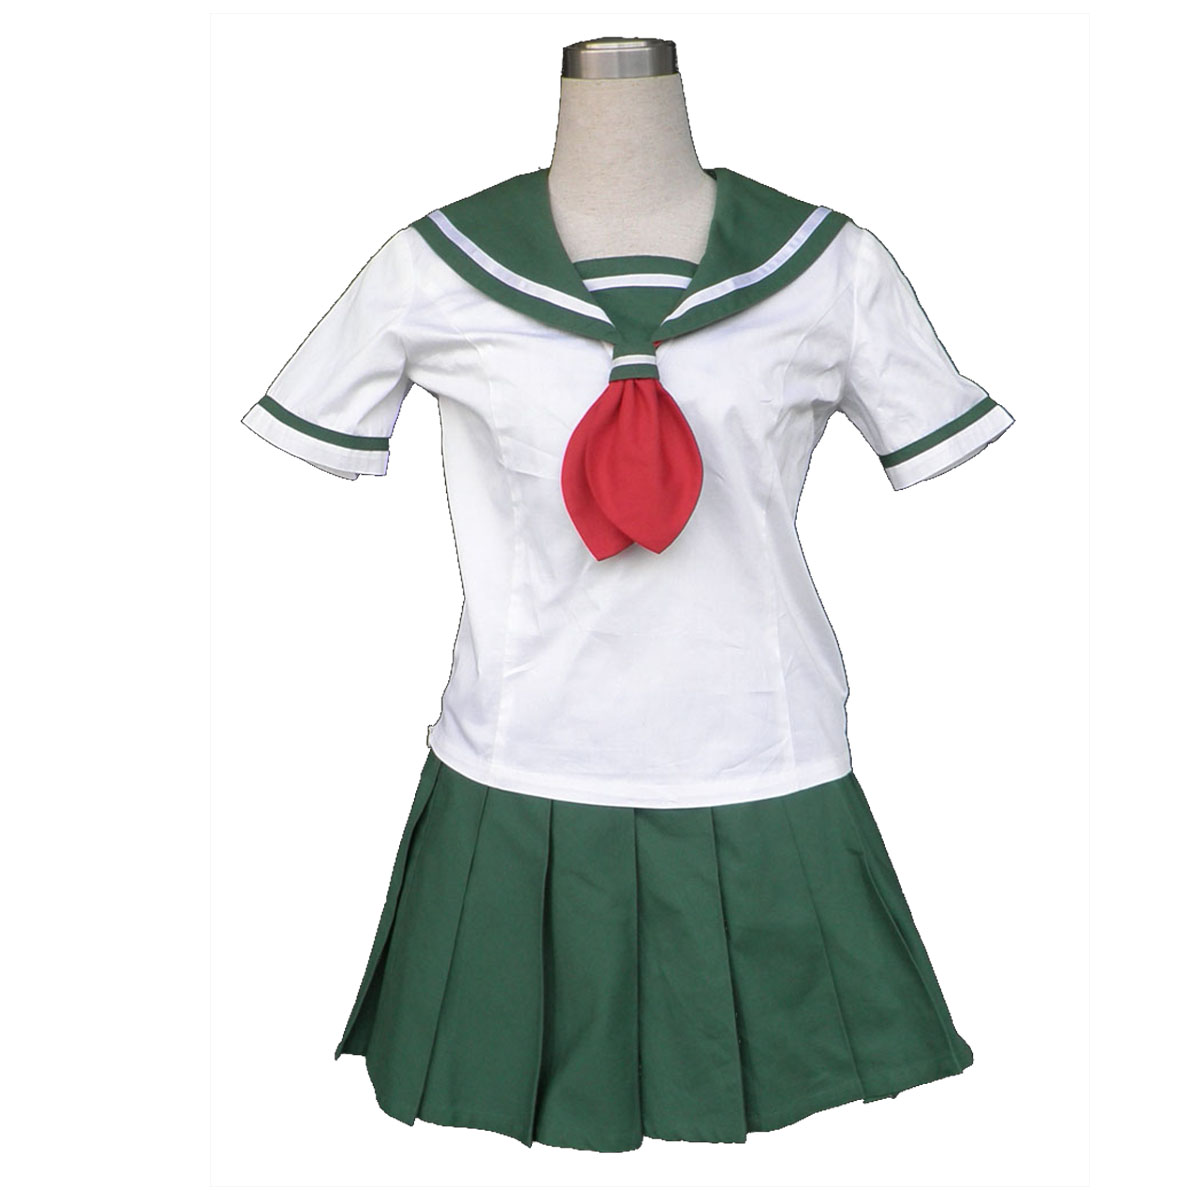 Inuyasha Kagome Higurashi 2 Sailor Anime Cosplay Costumes Outfit